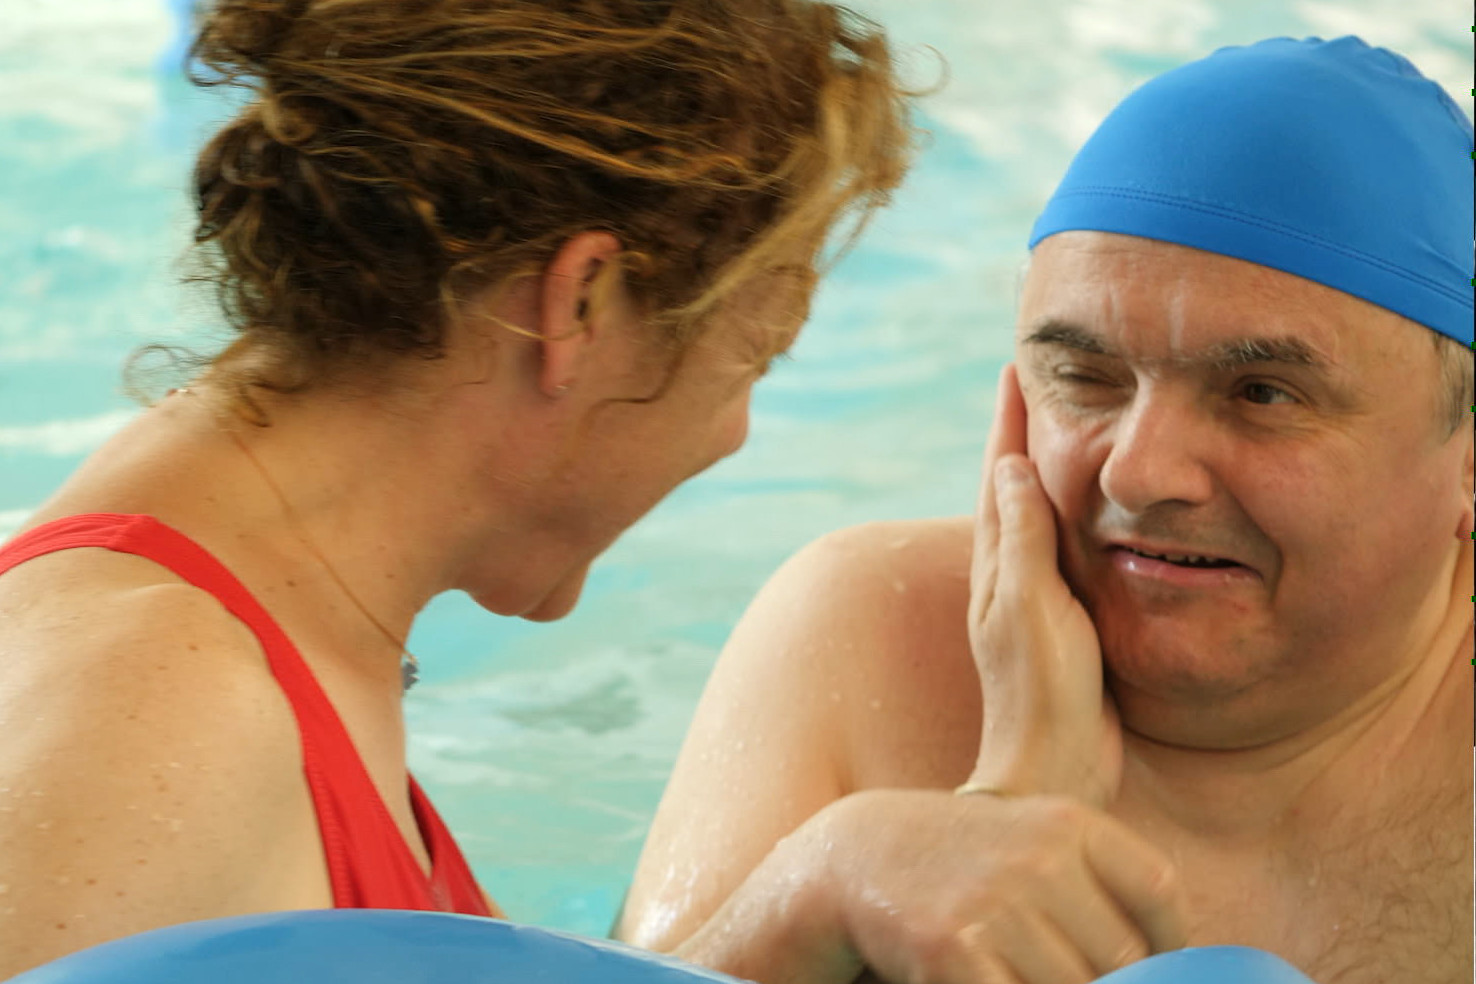 Fabio, utente adulto del Centro di Osimo, è in piscina per fare esercizi. La fisioterapista è di fianco a lui di profilo e gli sorride facendogli una carezza sul viso, Fabio a sua volta sorride.